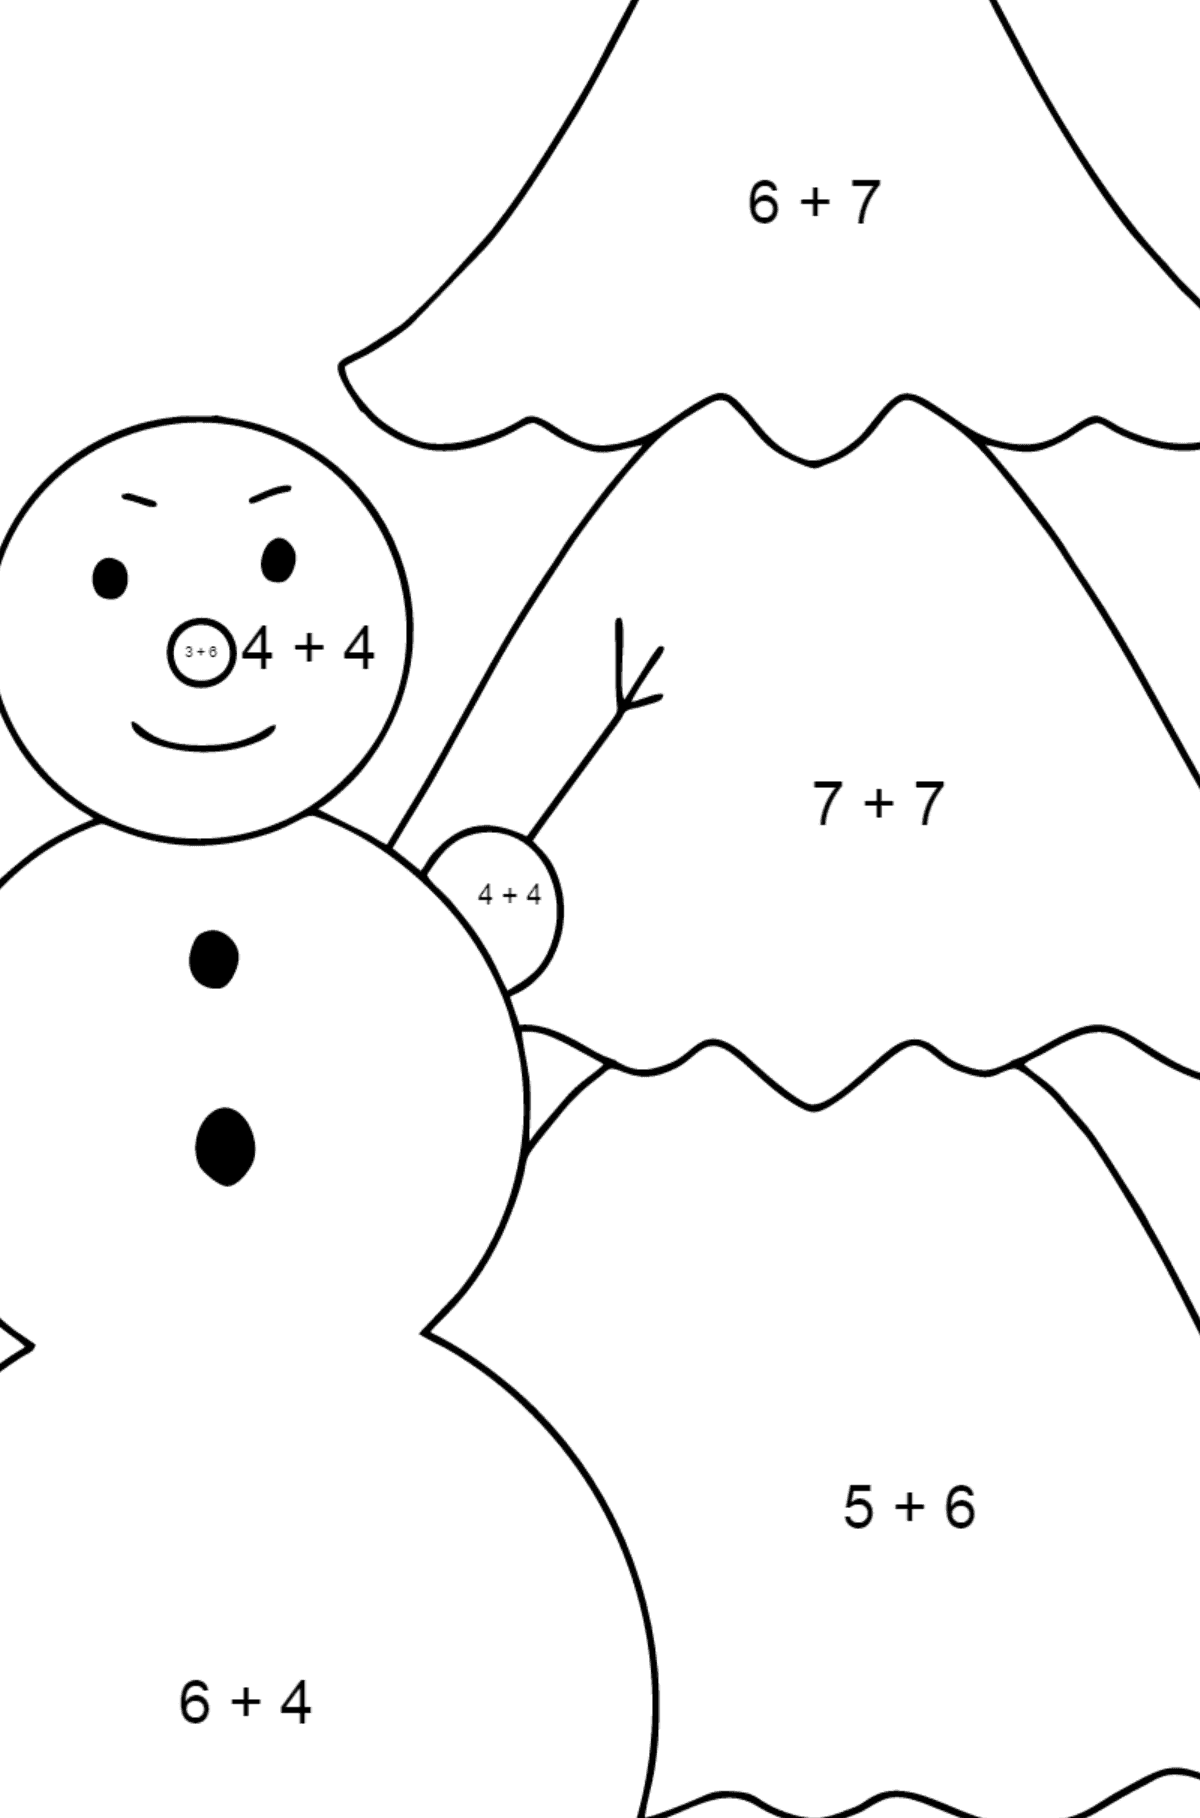 Omalovánka sněhulák a strom - Matematická Omalovánka - Sčítání pro děti